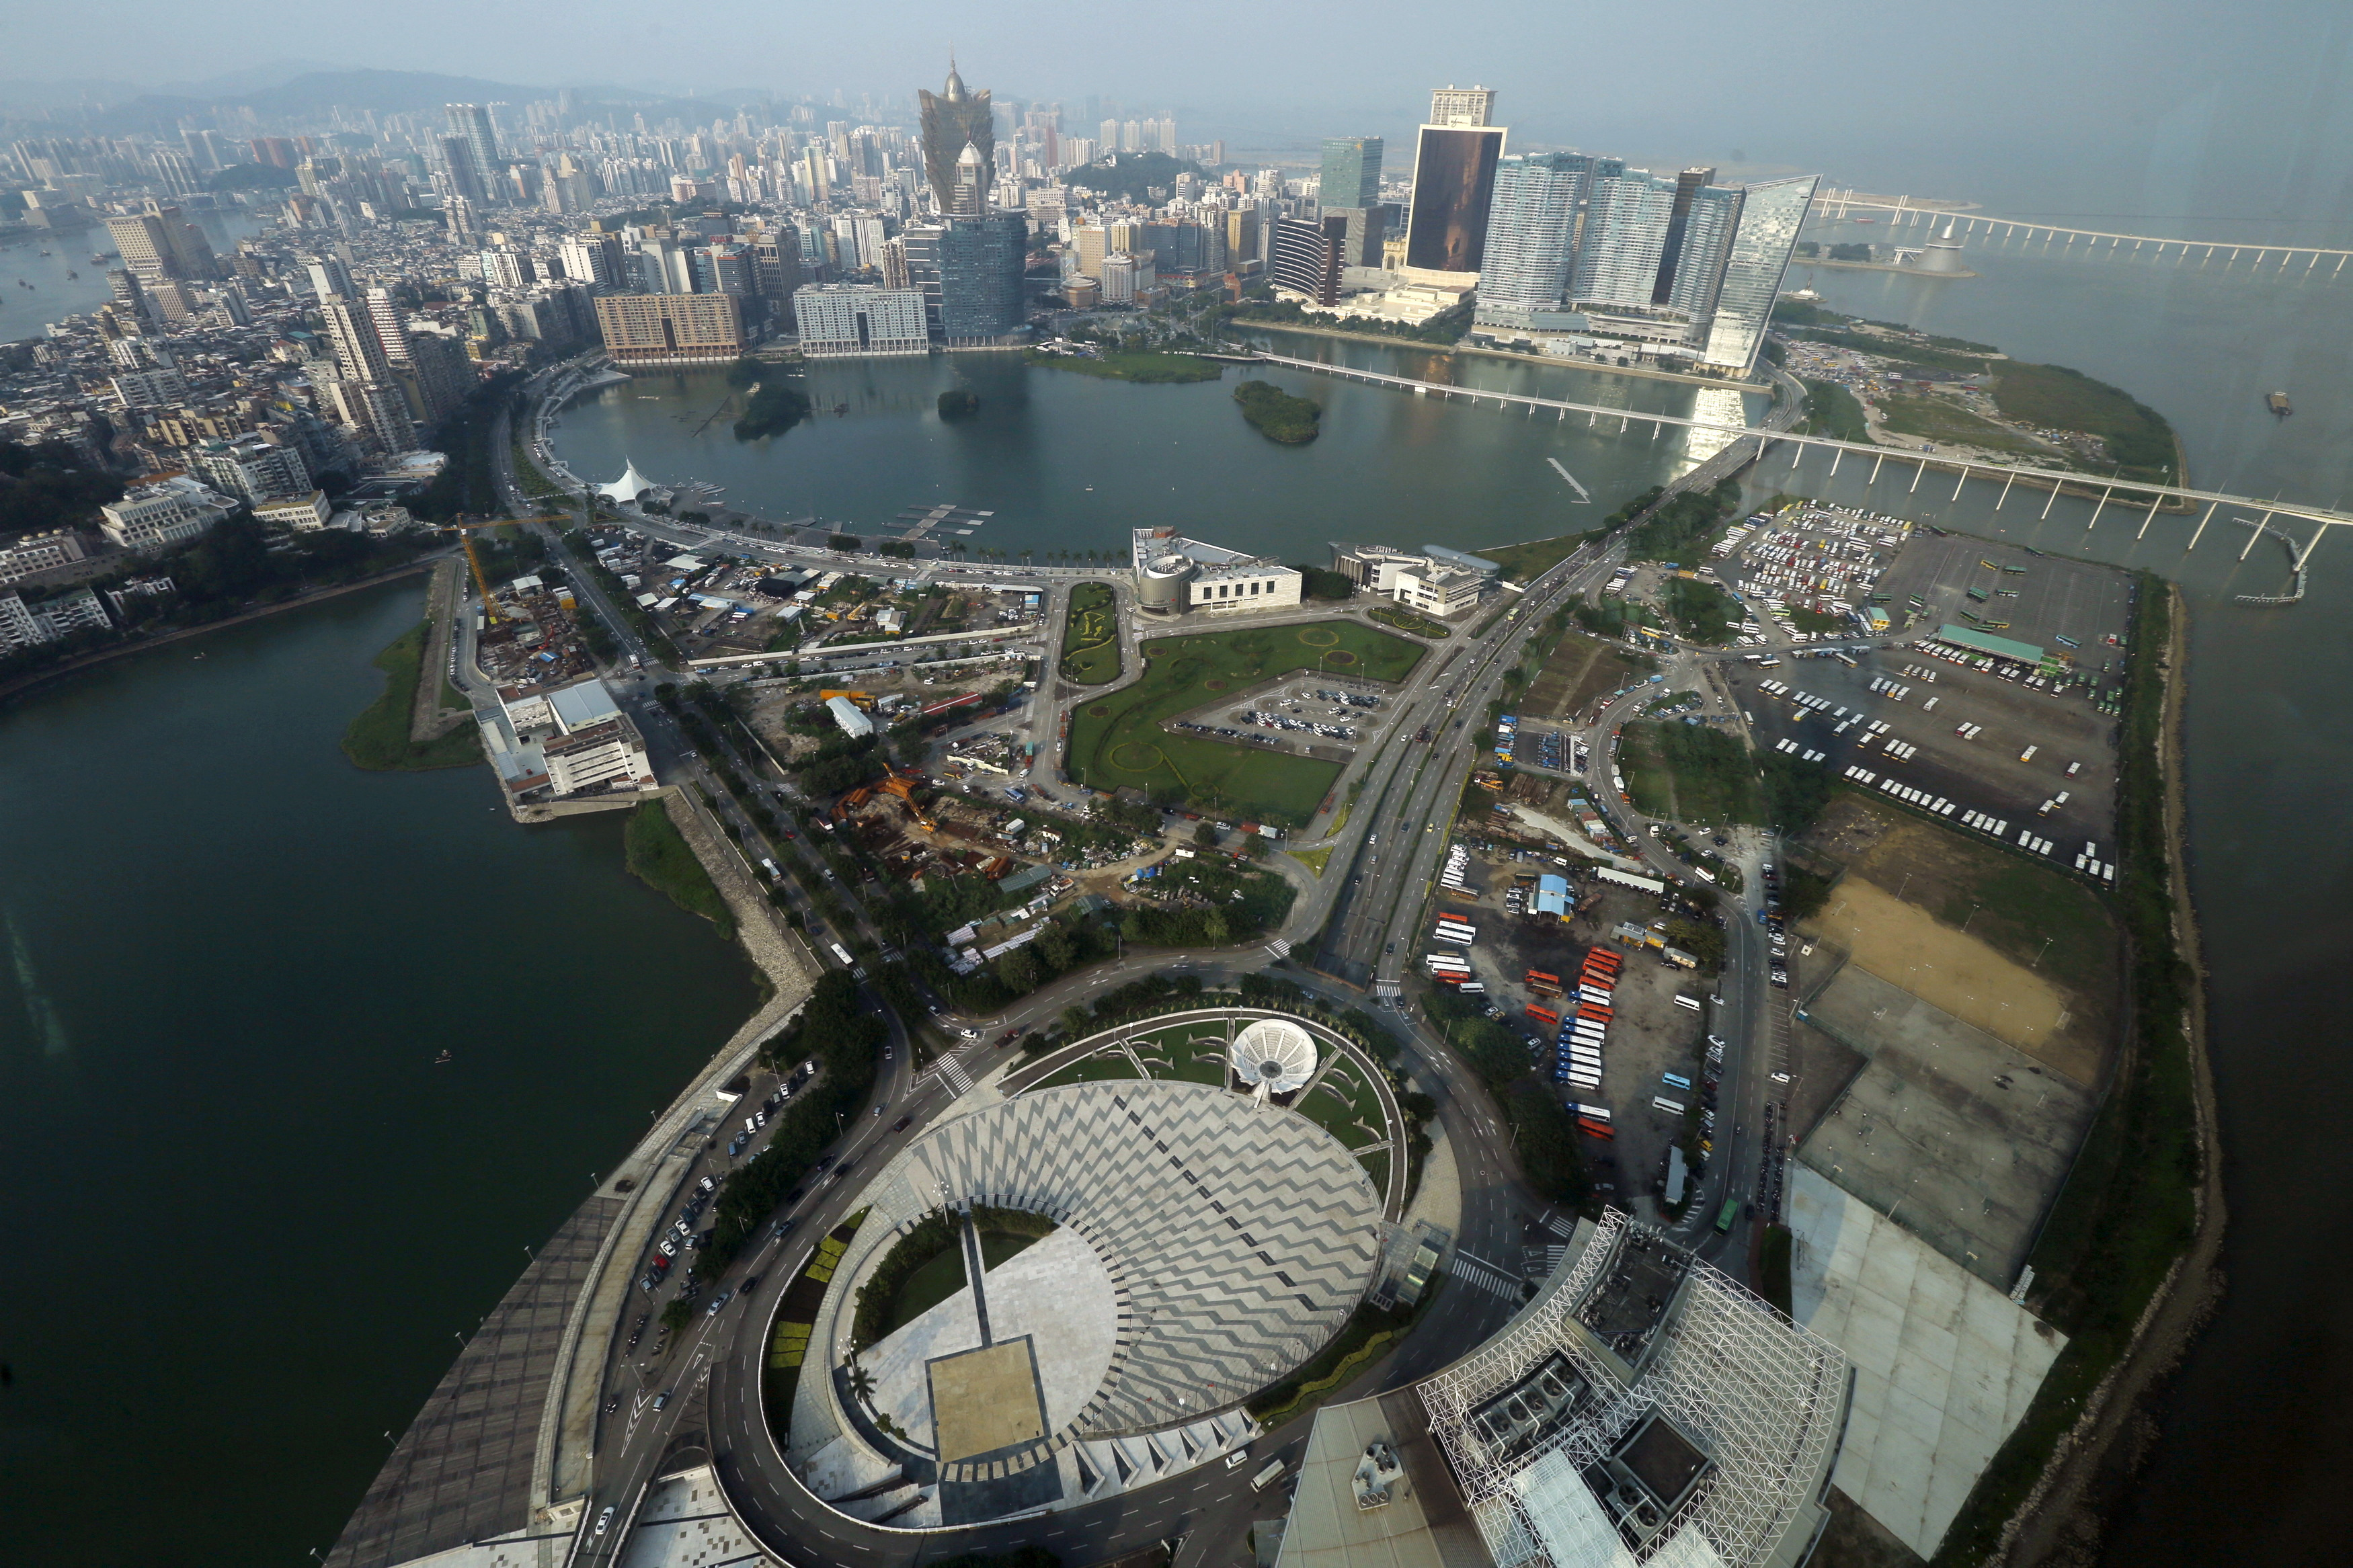 A general view of Macau peninsula, China, seen from Macau Tower